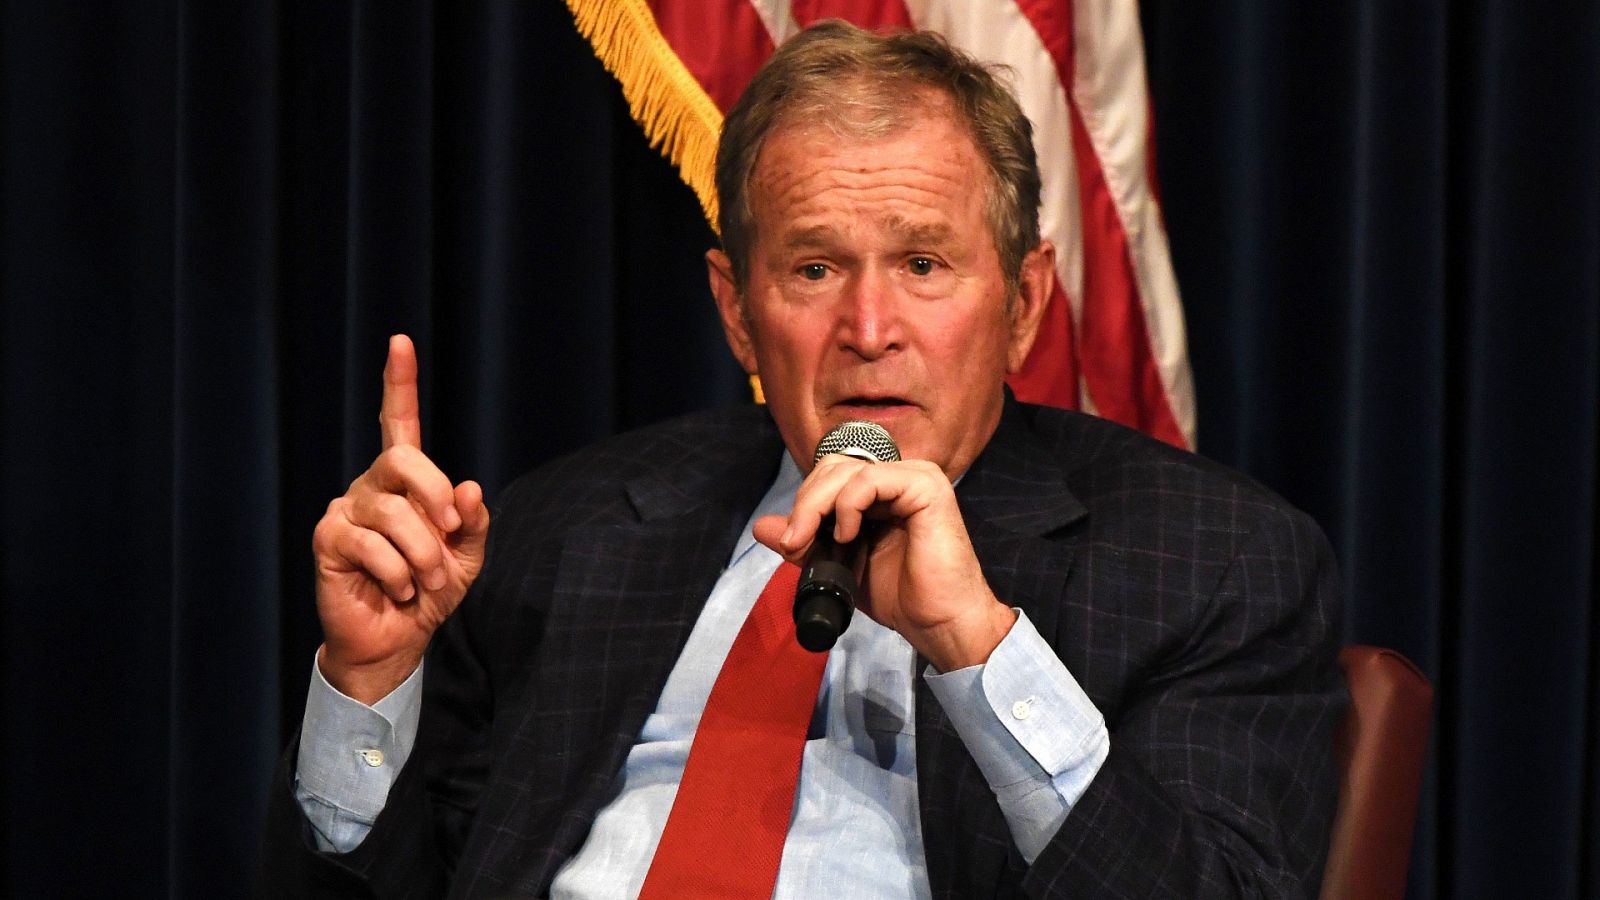 Bush felicita a Biden y asegura que el resultado electoral es "claro"